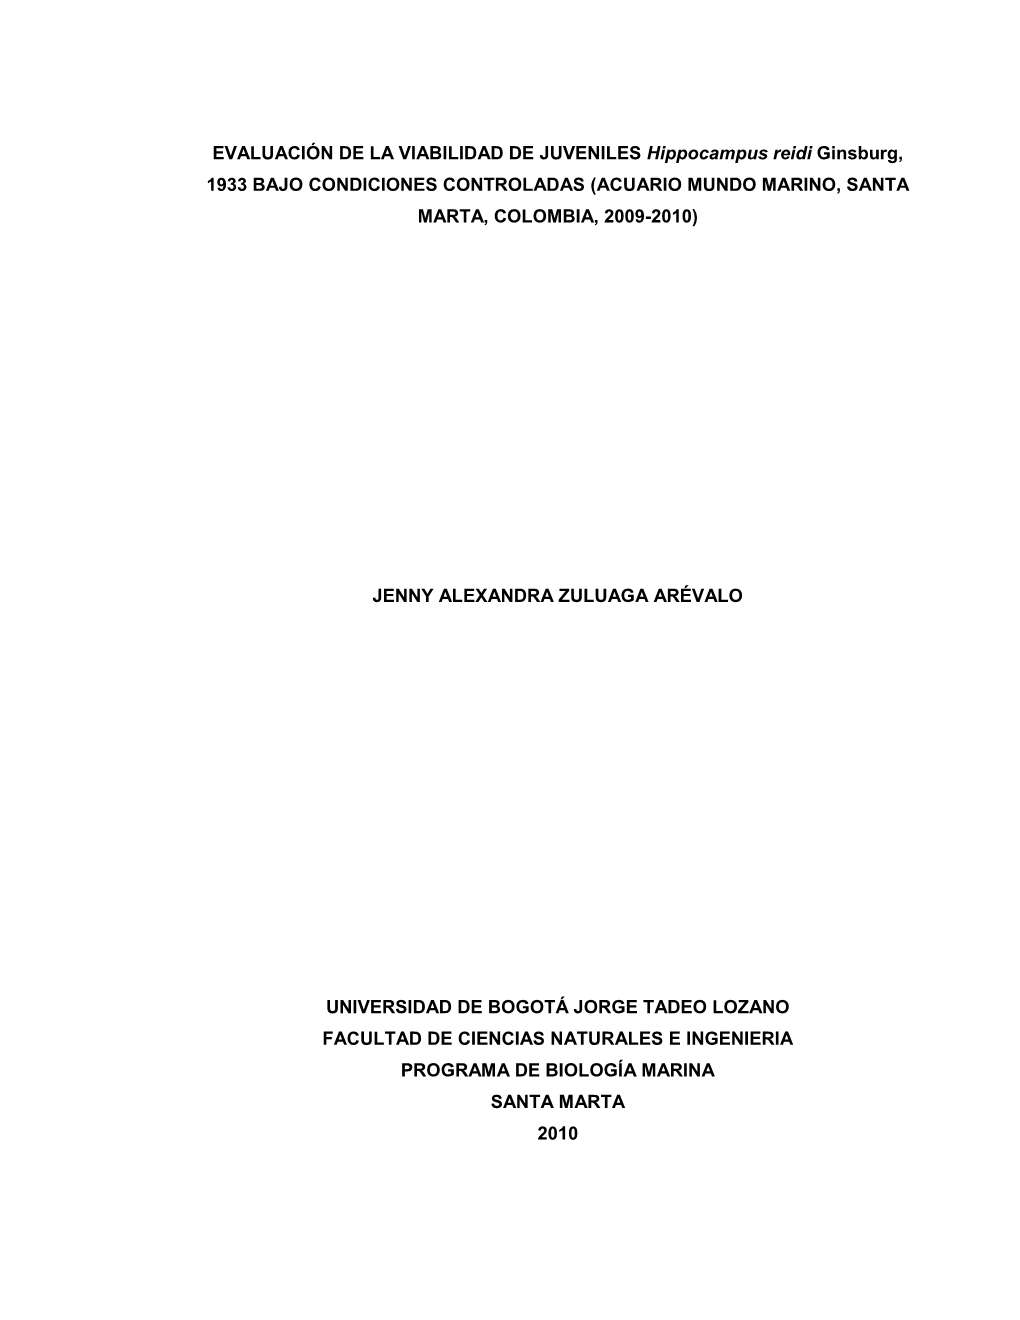 EVALUACIÓN DE LA VIABILIDAD DE JUVENILES Hippocampus Reidi Ginsburg, 1933 BAJO CONDICIONES CONTROLADAS (ACUARIO MUNDO MARINO, SANTA MARTA, COLOMBIA, 2009-2010)